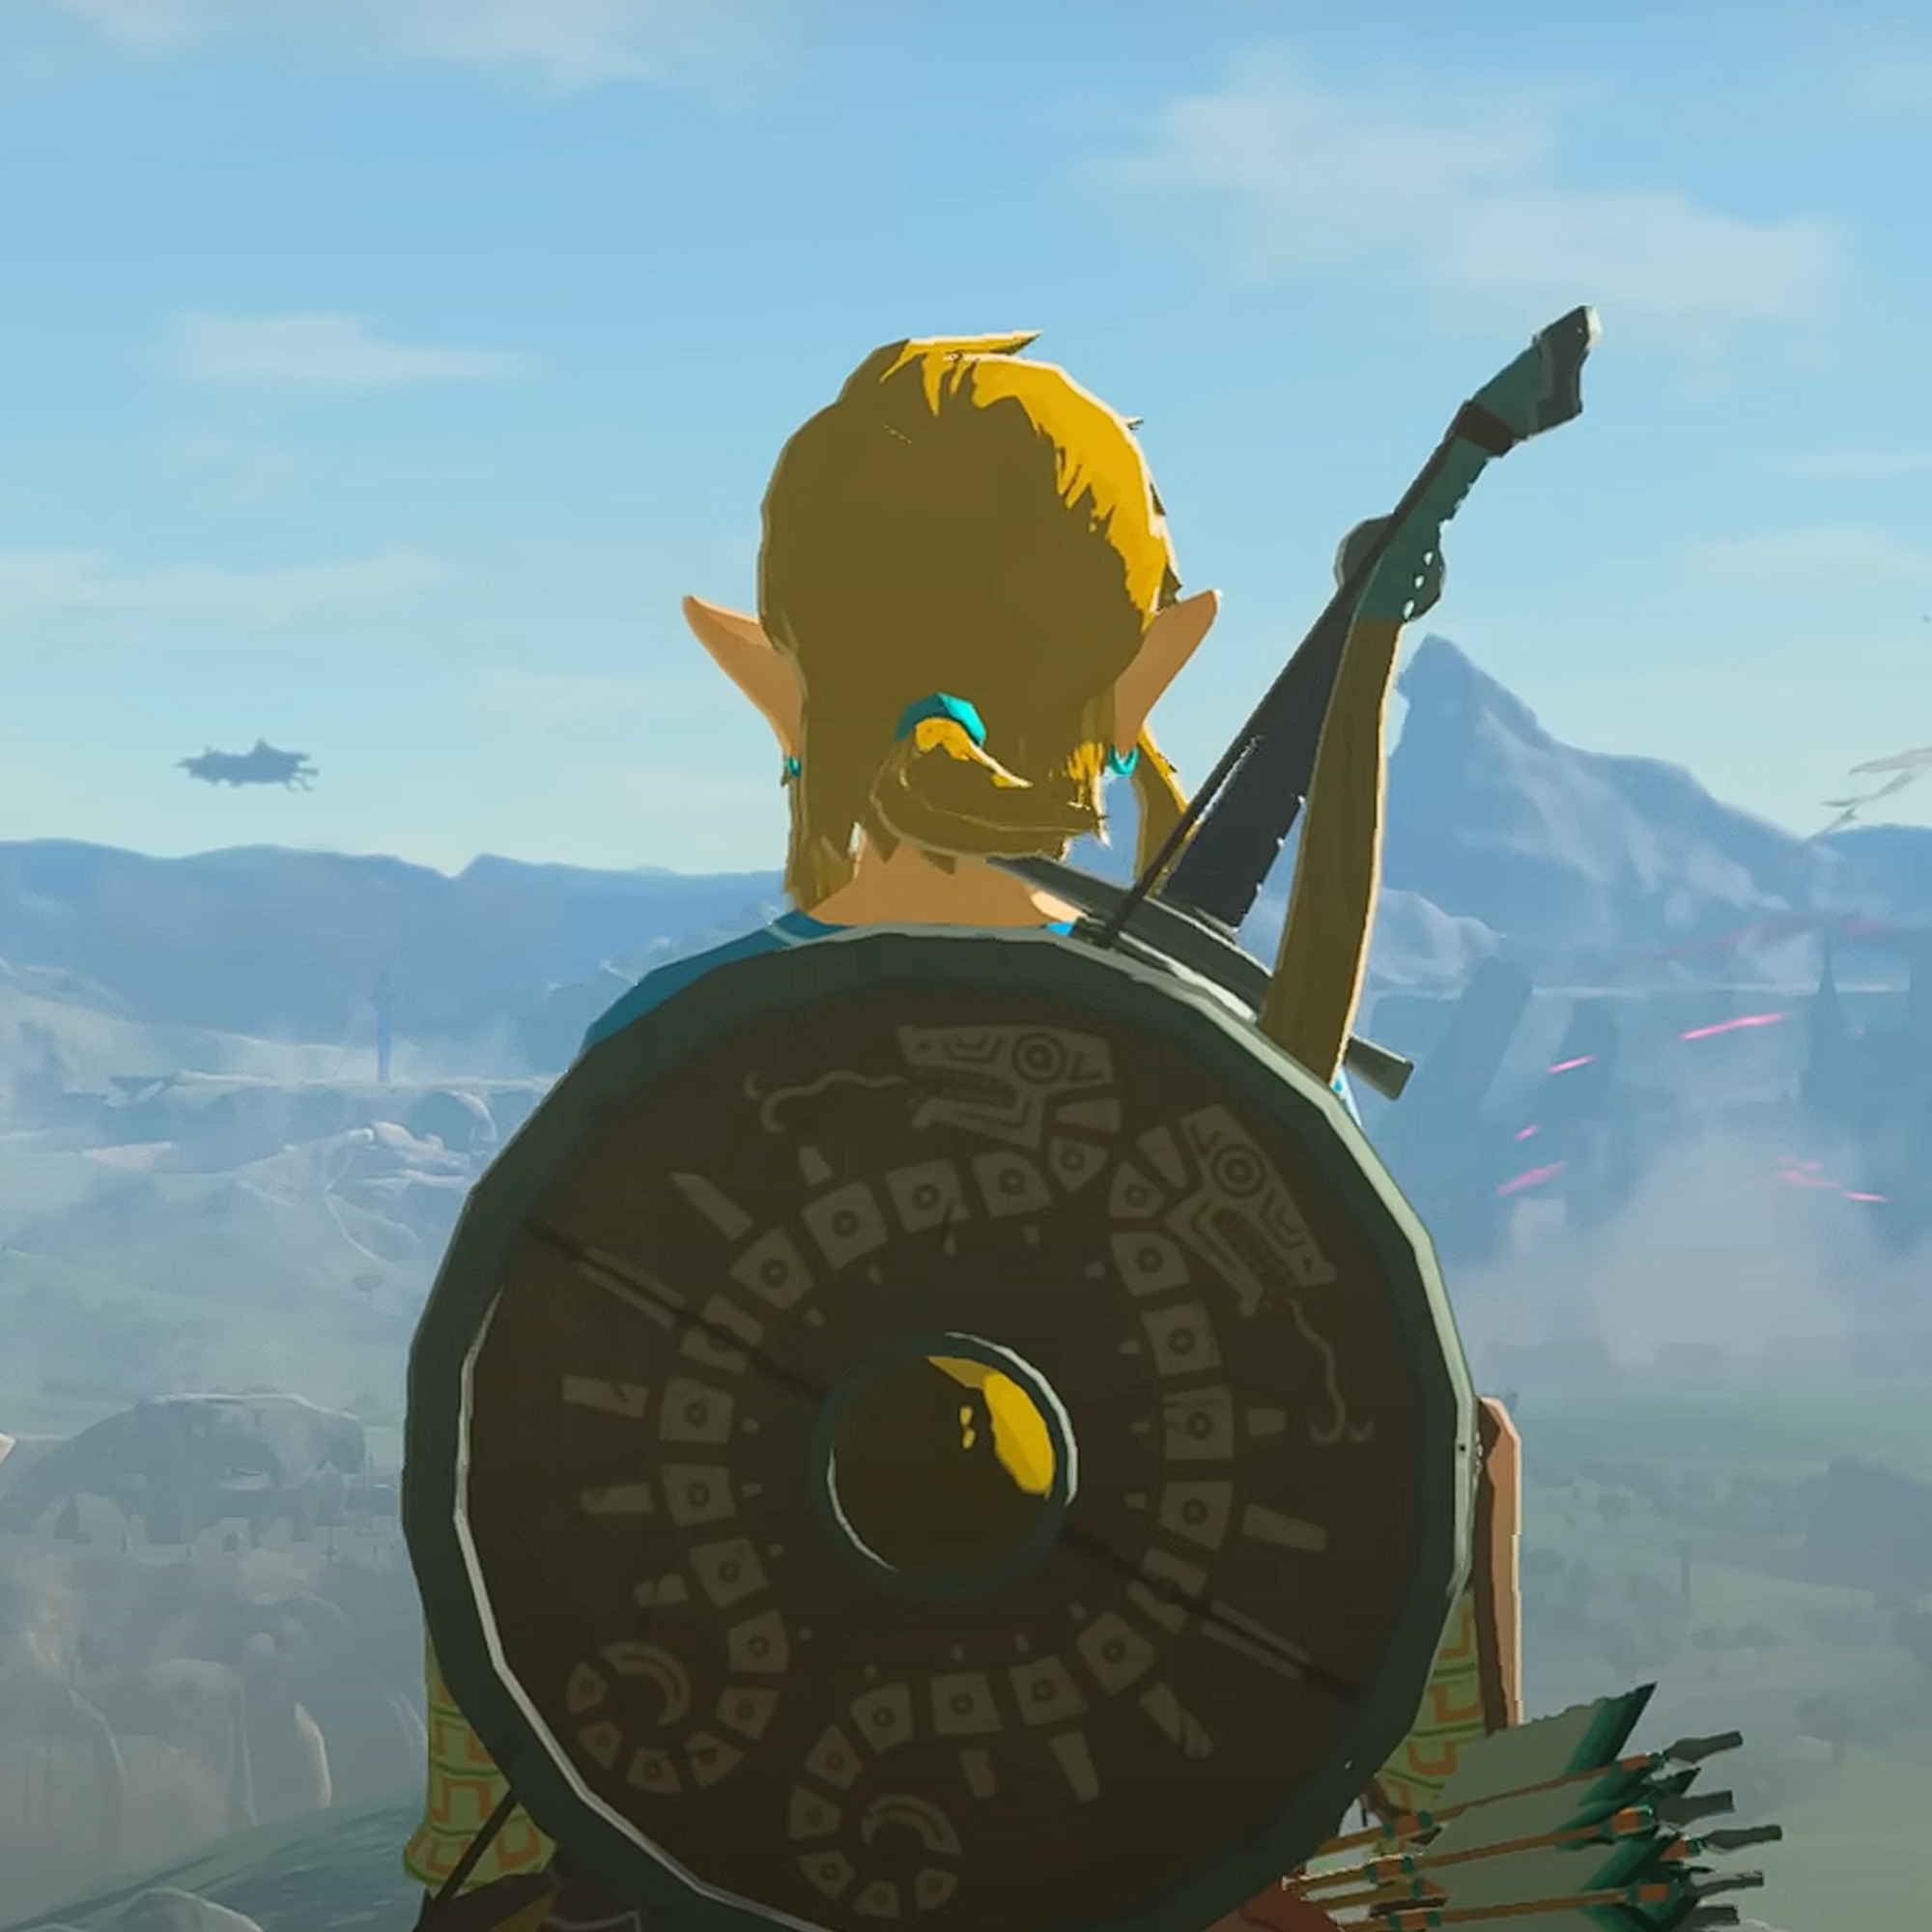 Zelda from "The Legend of Zelda" | Source: youtube.com/NintendoAmerica